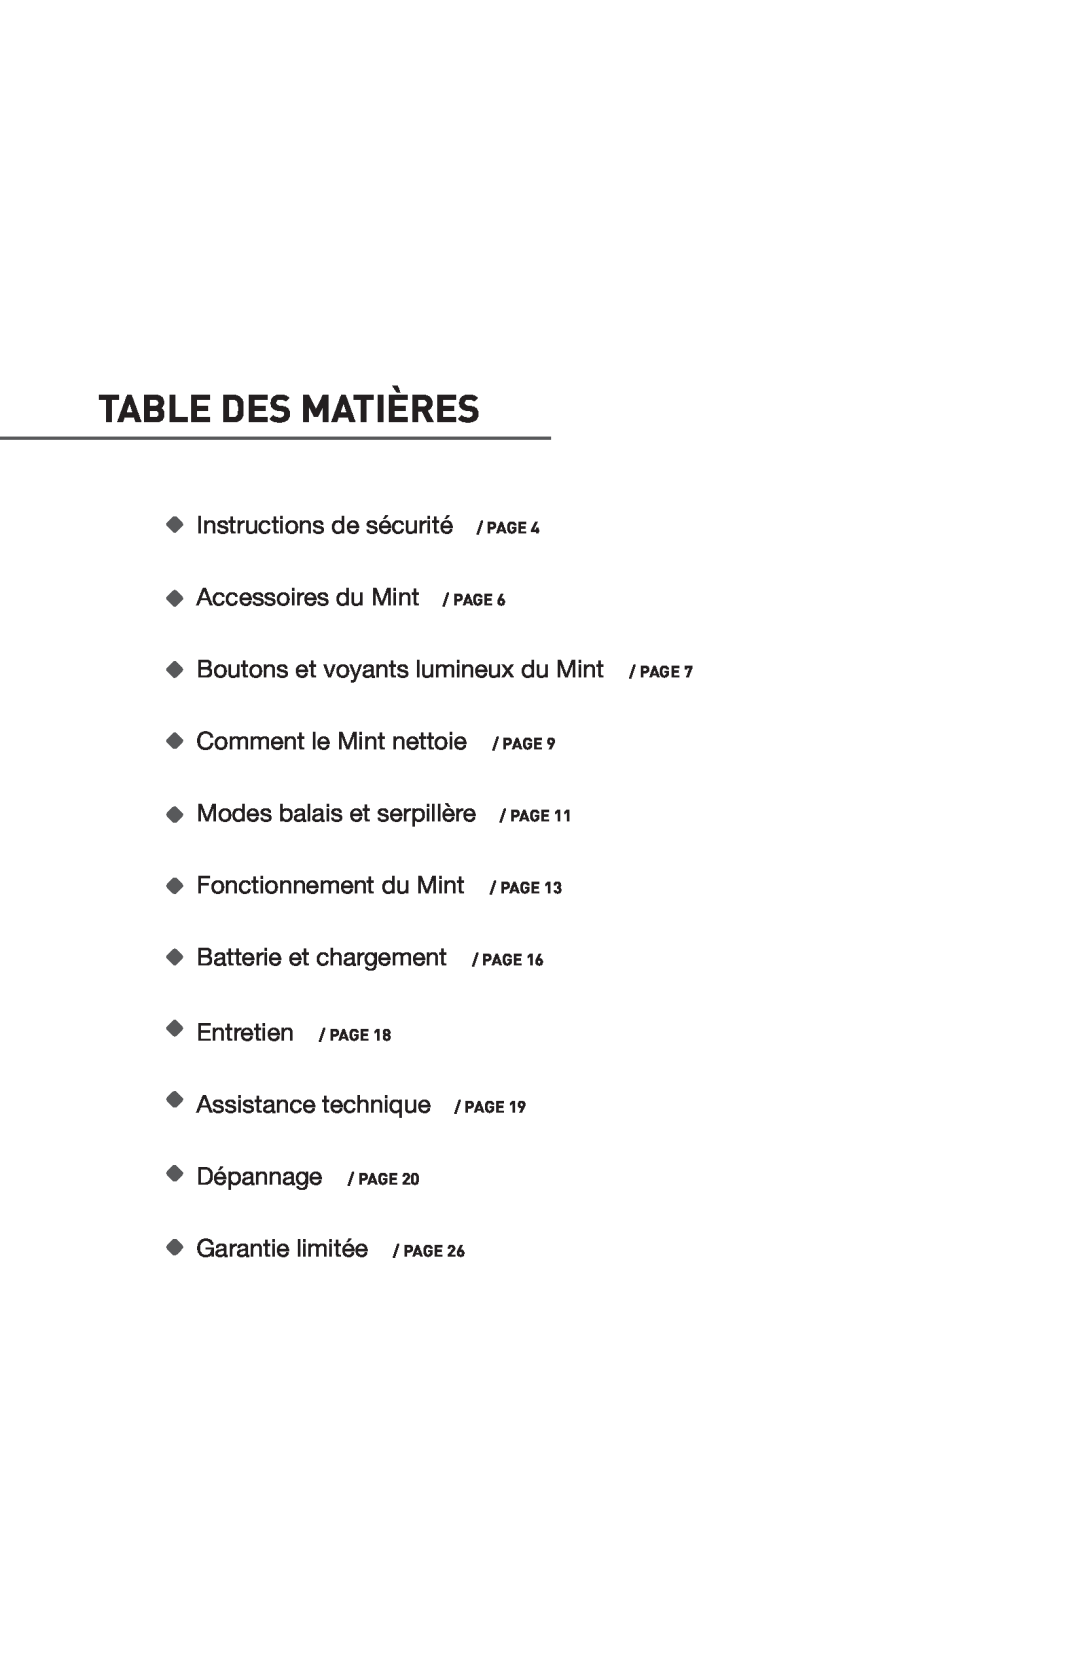 iRobot 4200 Table Des Matières, Instructions de sécurité / PAGE Accessoires du Mint / PAGE, Comment le Mint nettoie, Page 